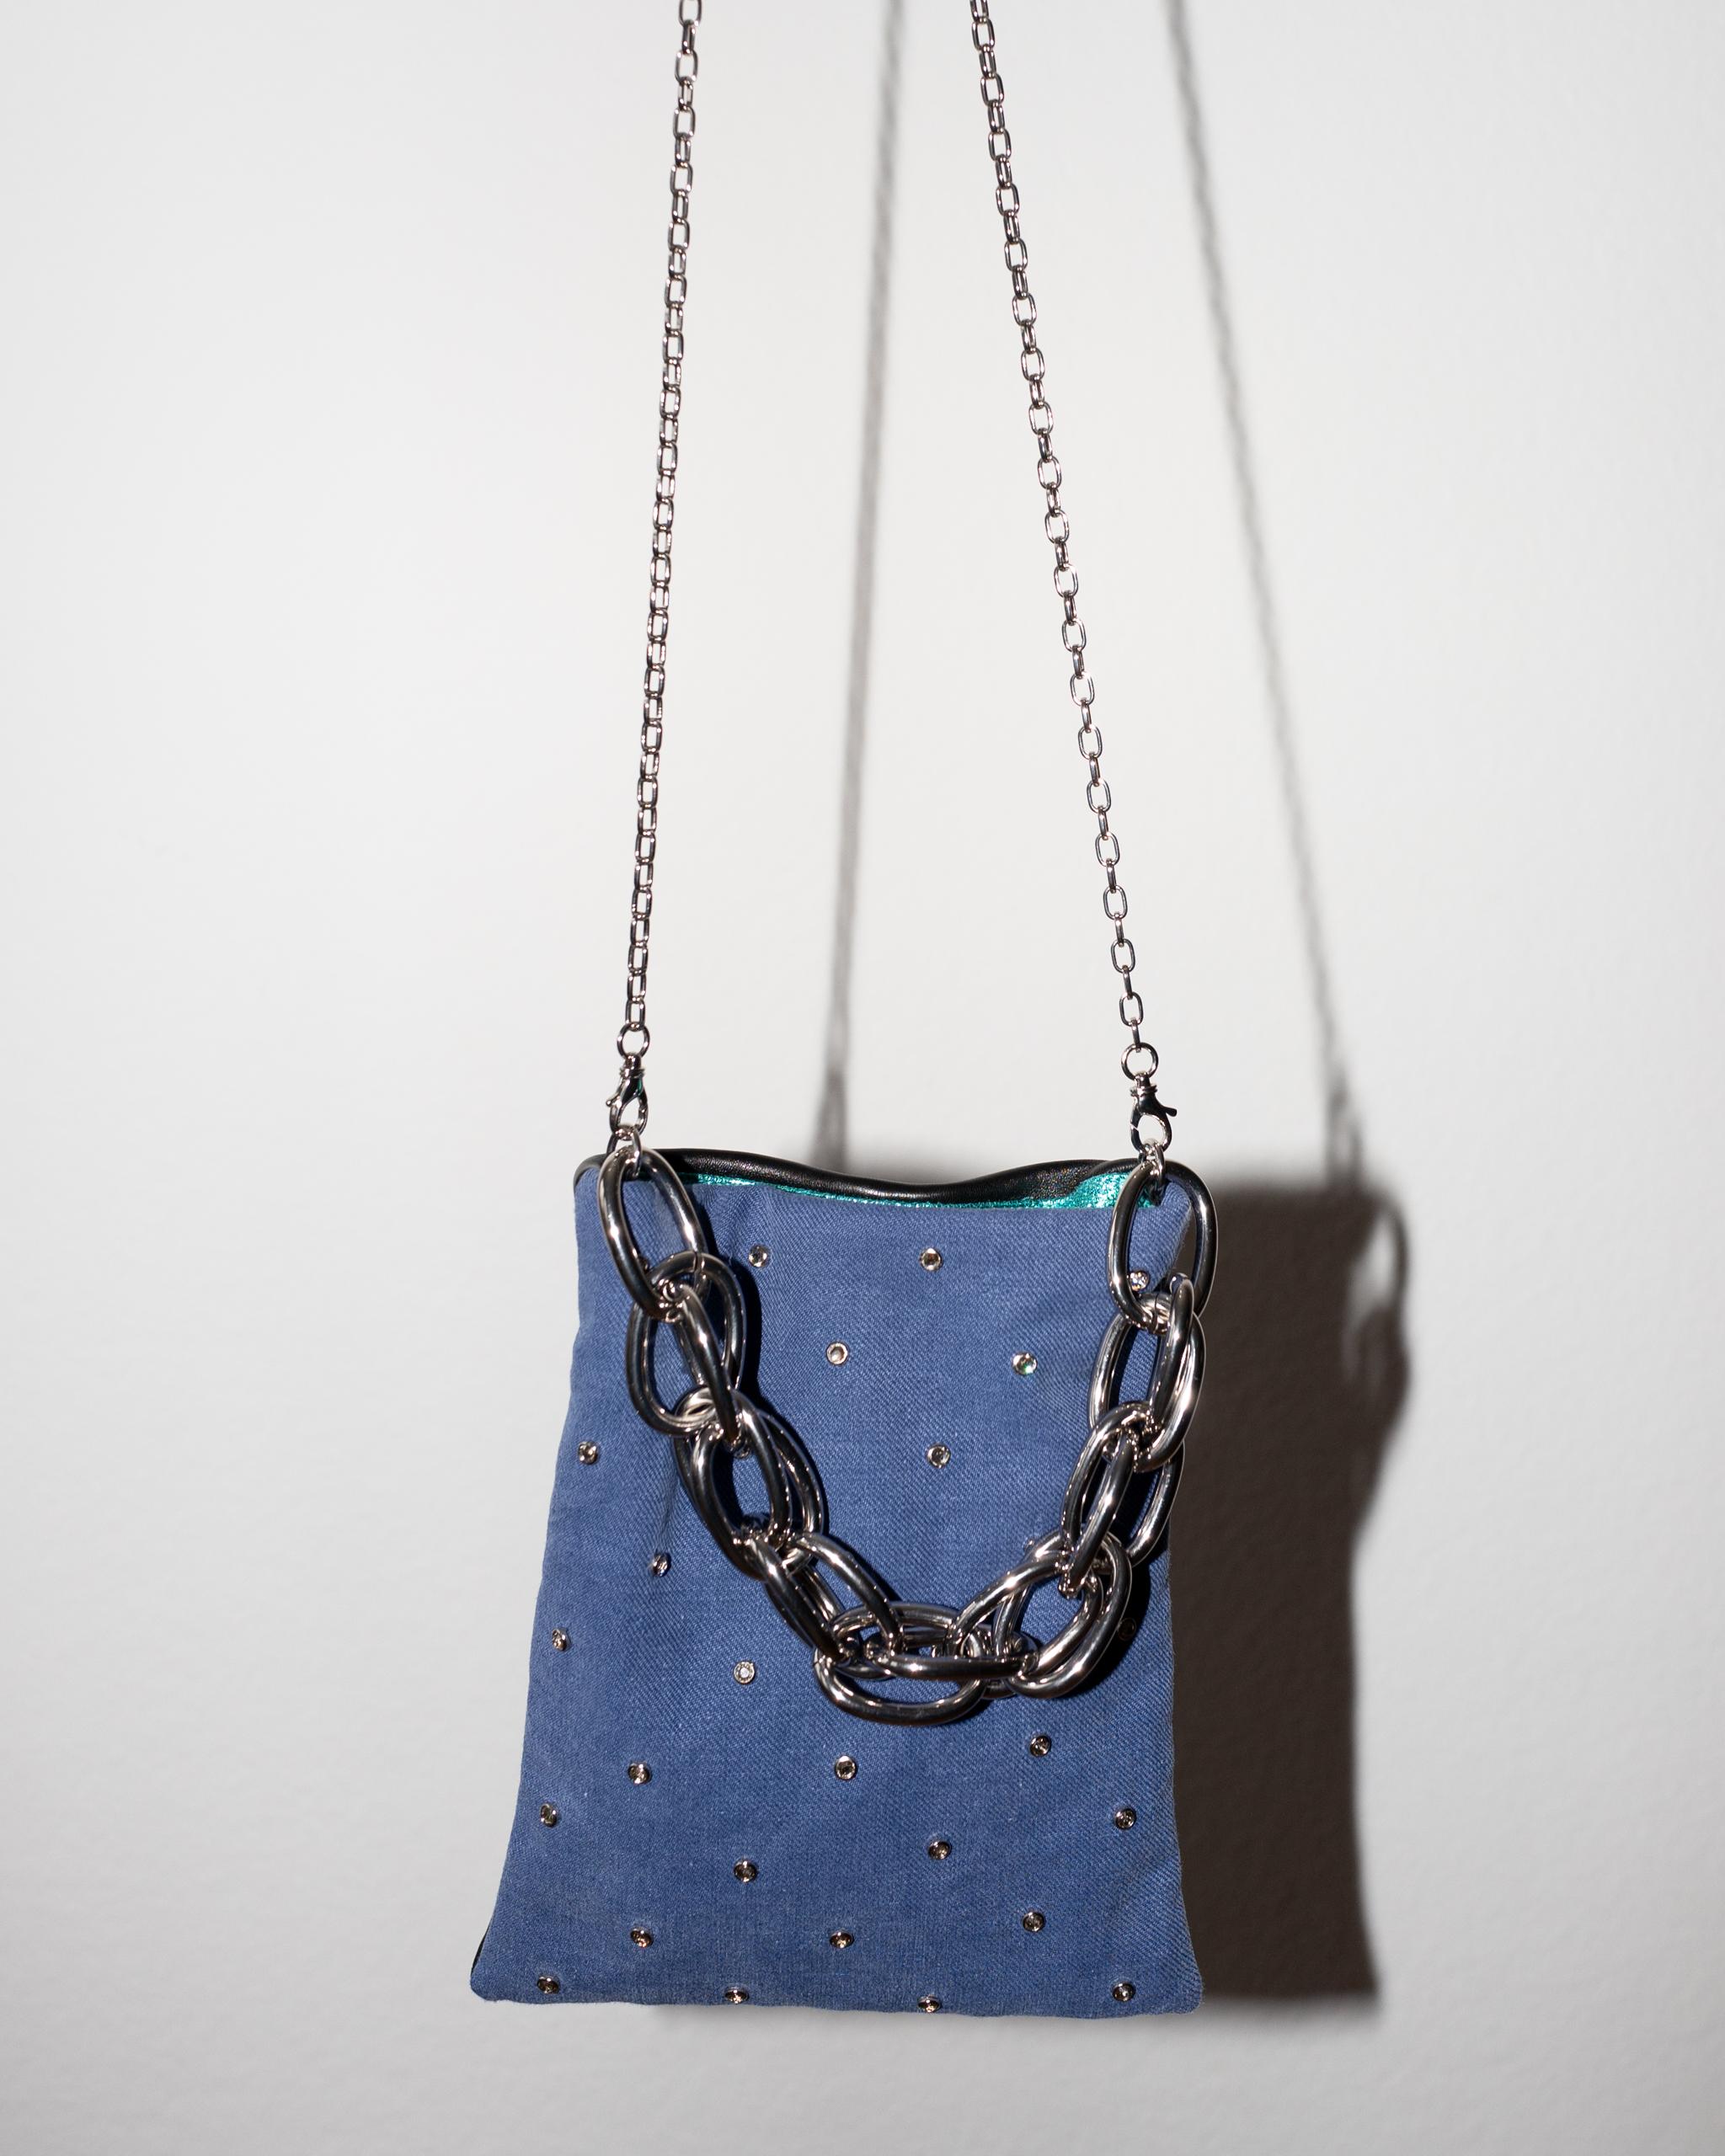 Crystal Embellished Blue Evening Shoulder Bag Black Leather Chunky Chain 1